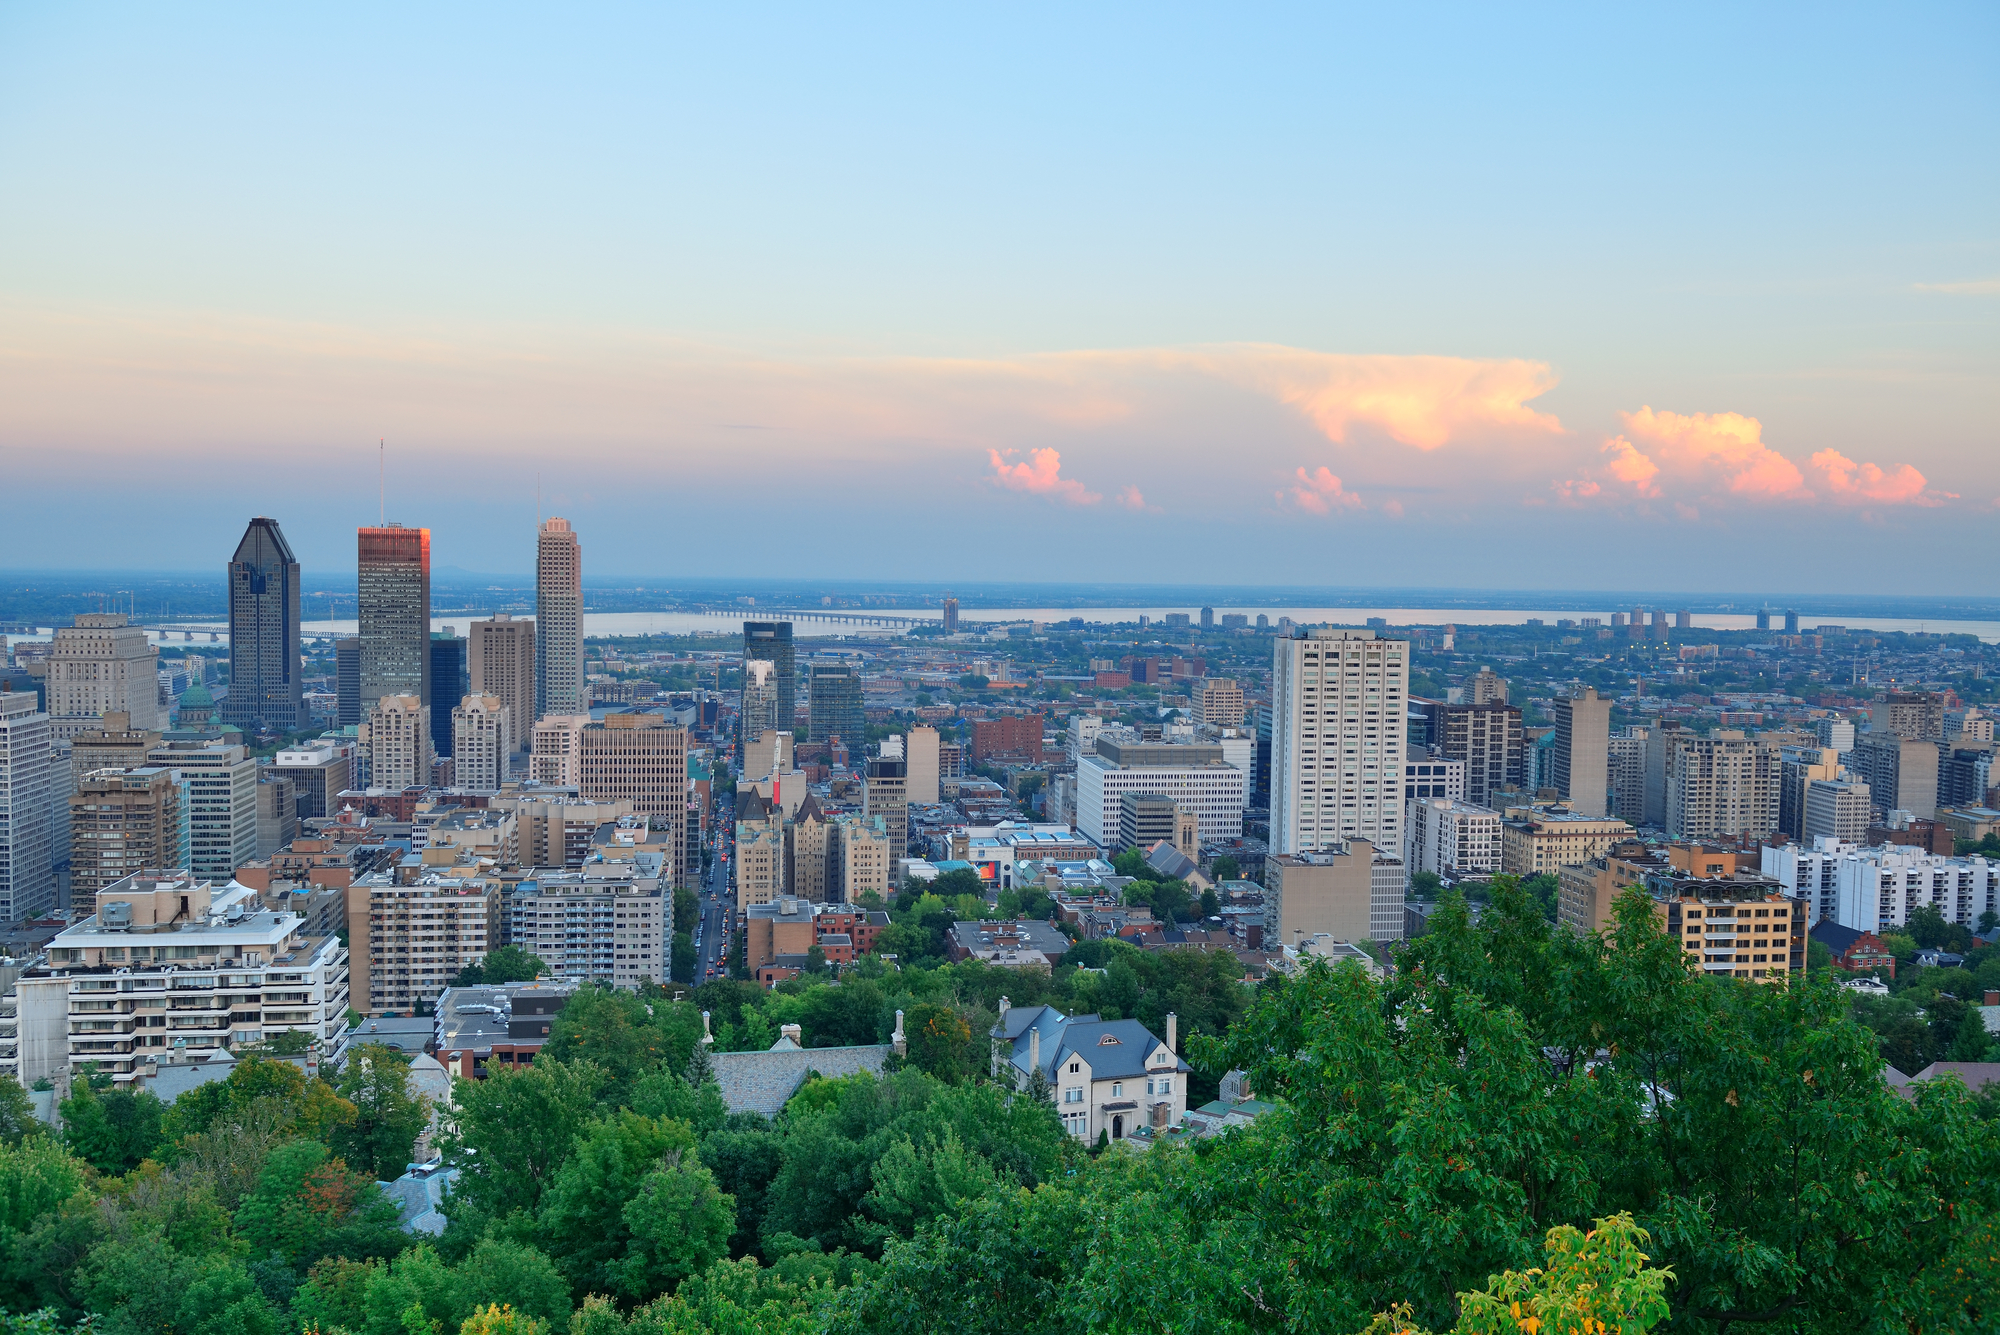 Quebec city skyline at dusk.